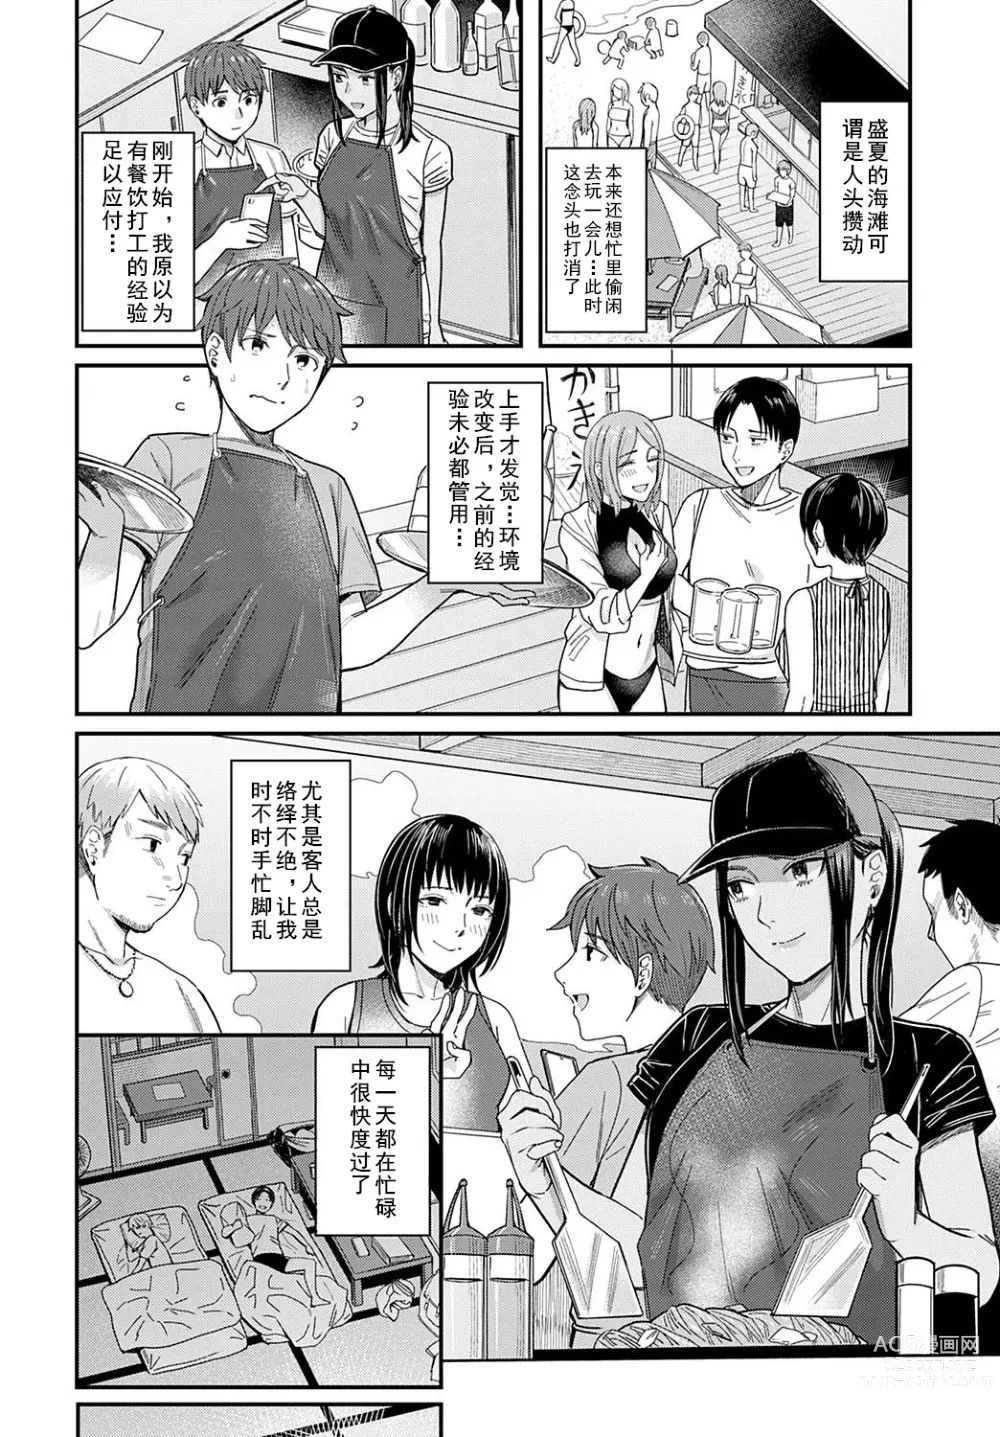 Page 6 of manga Shiosai